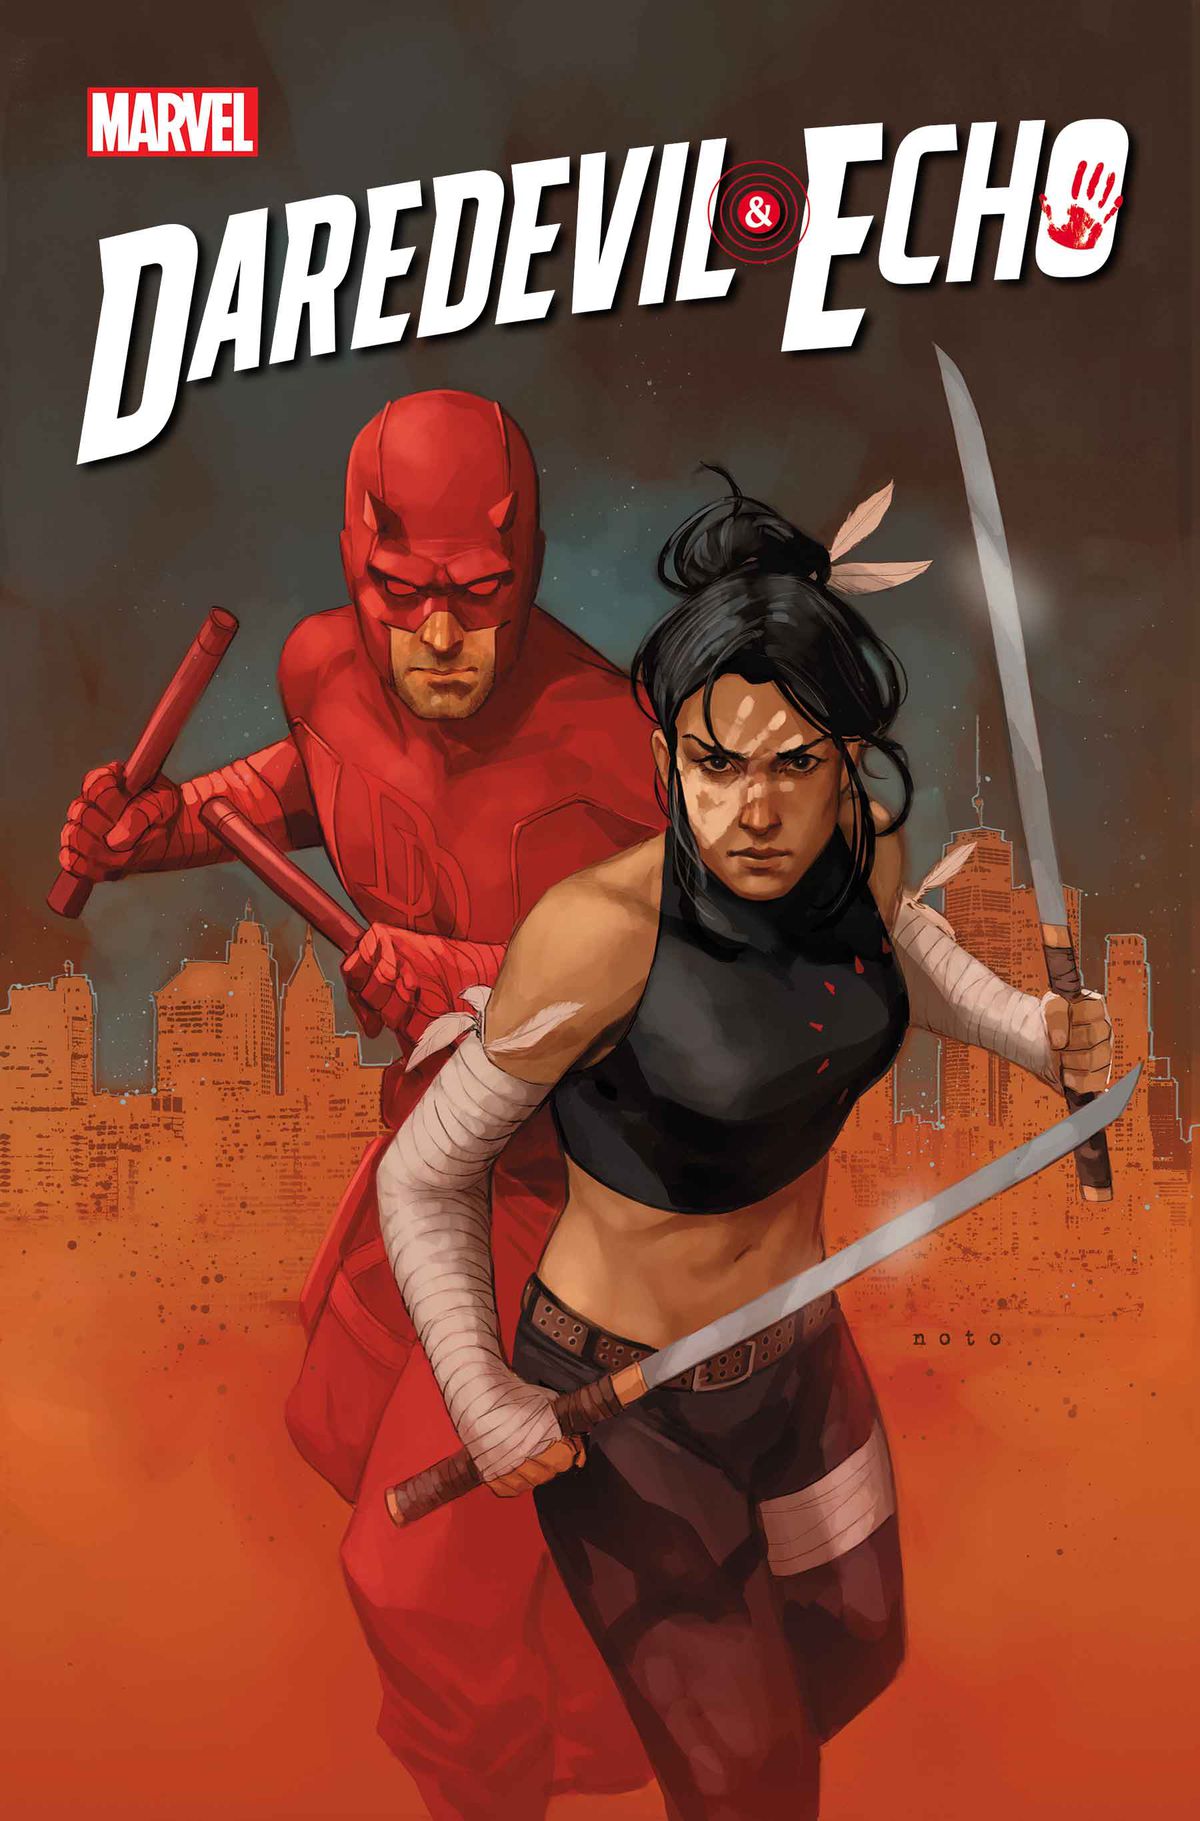 Daredevil alza i suoi manganelli rossi ed Echo alza due spade sulla copertina di Daredevil & Echo #1